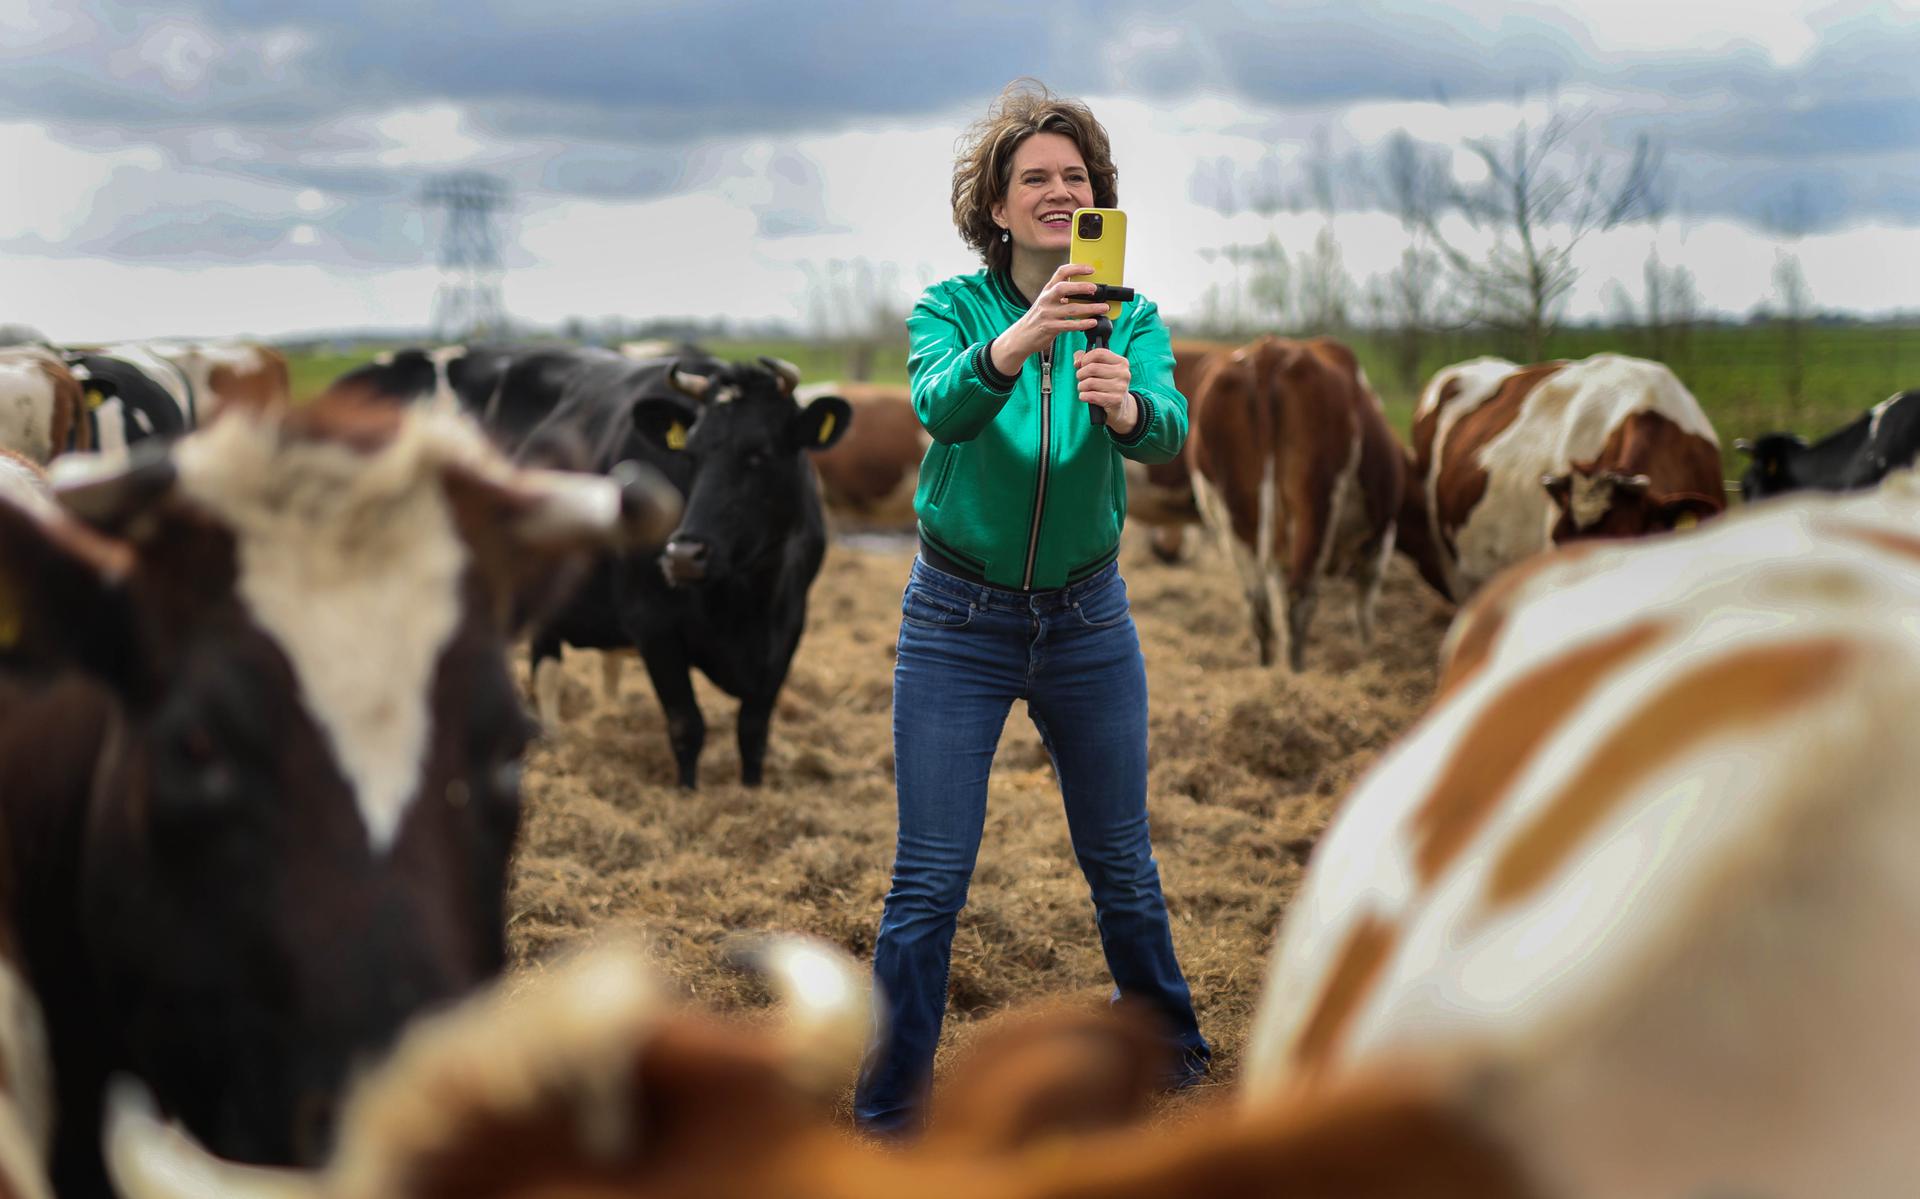 Geertje Algera di Workum è una pioniera nella fotografia con smartphone.  “Ho imparato ad affrontare le cose della fattoria.”